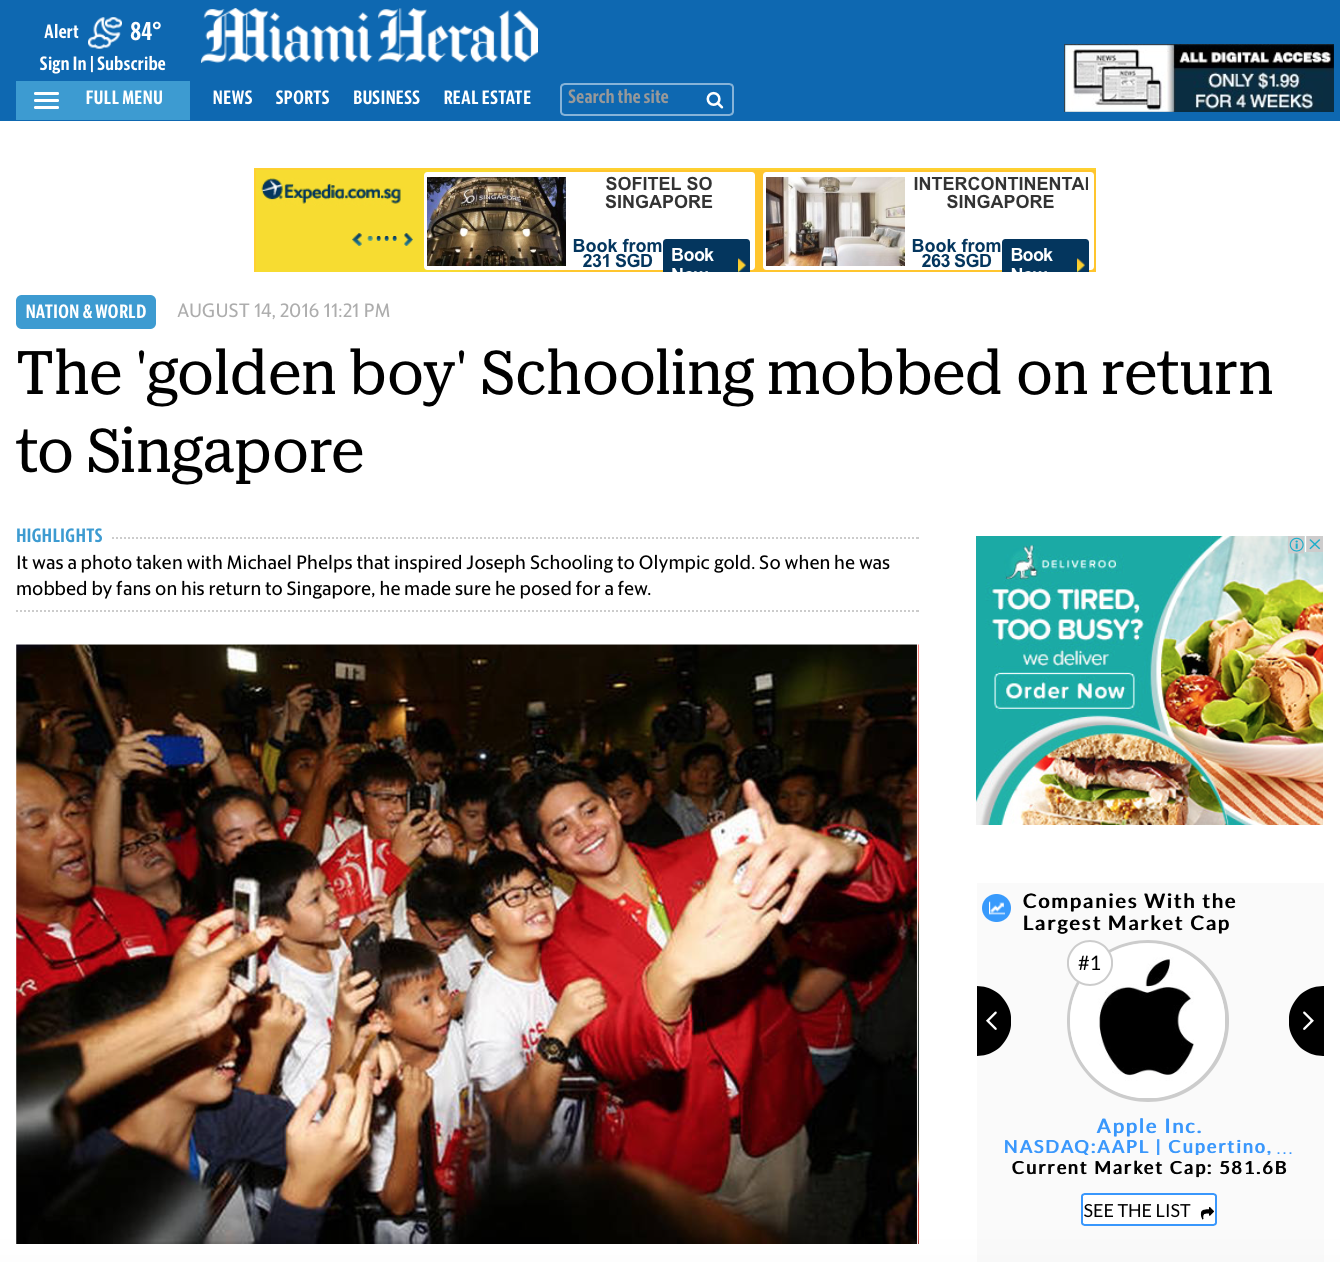  Joseph Schooling's Singapore return for the Associated Press (www.apimages.com) 